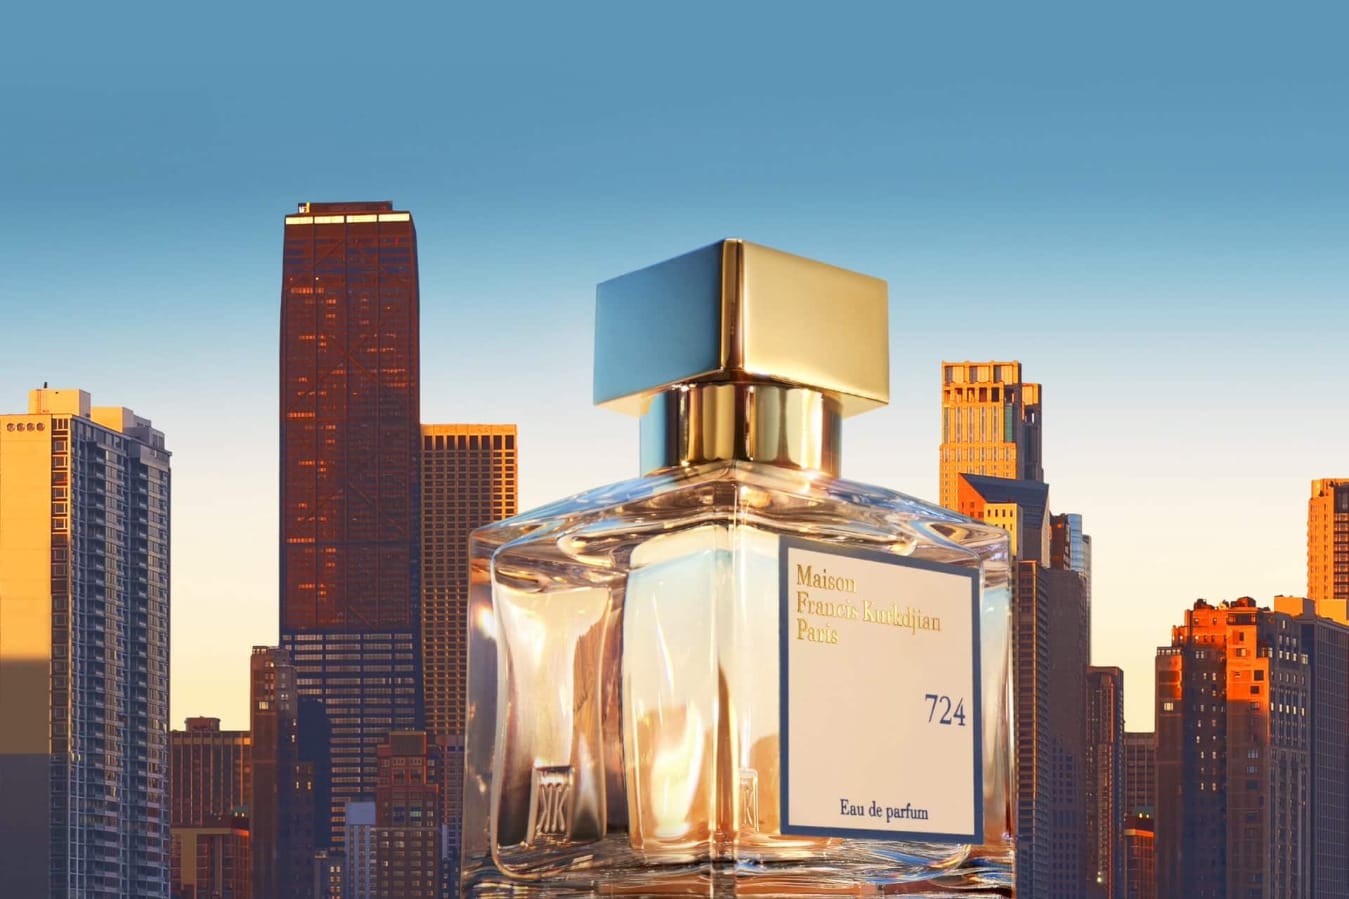 Maison Francis Kurkdjian  724 Eau de Parfum - Production Service Network